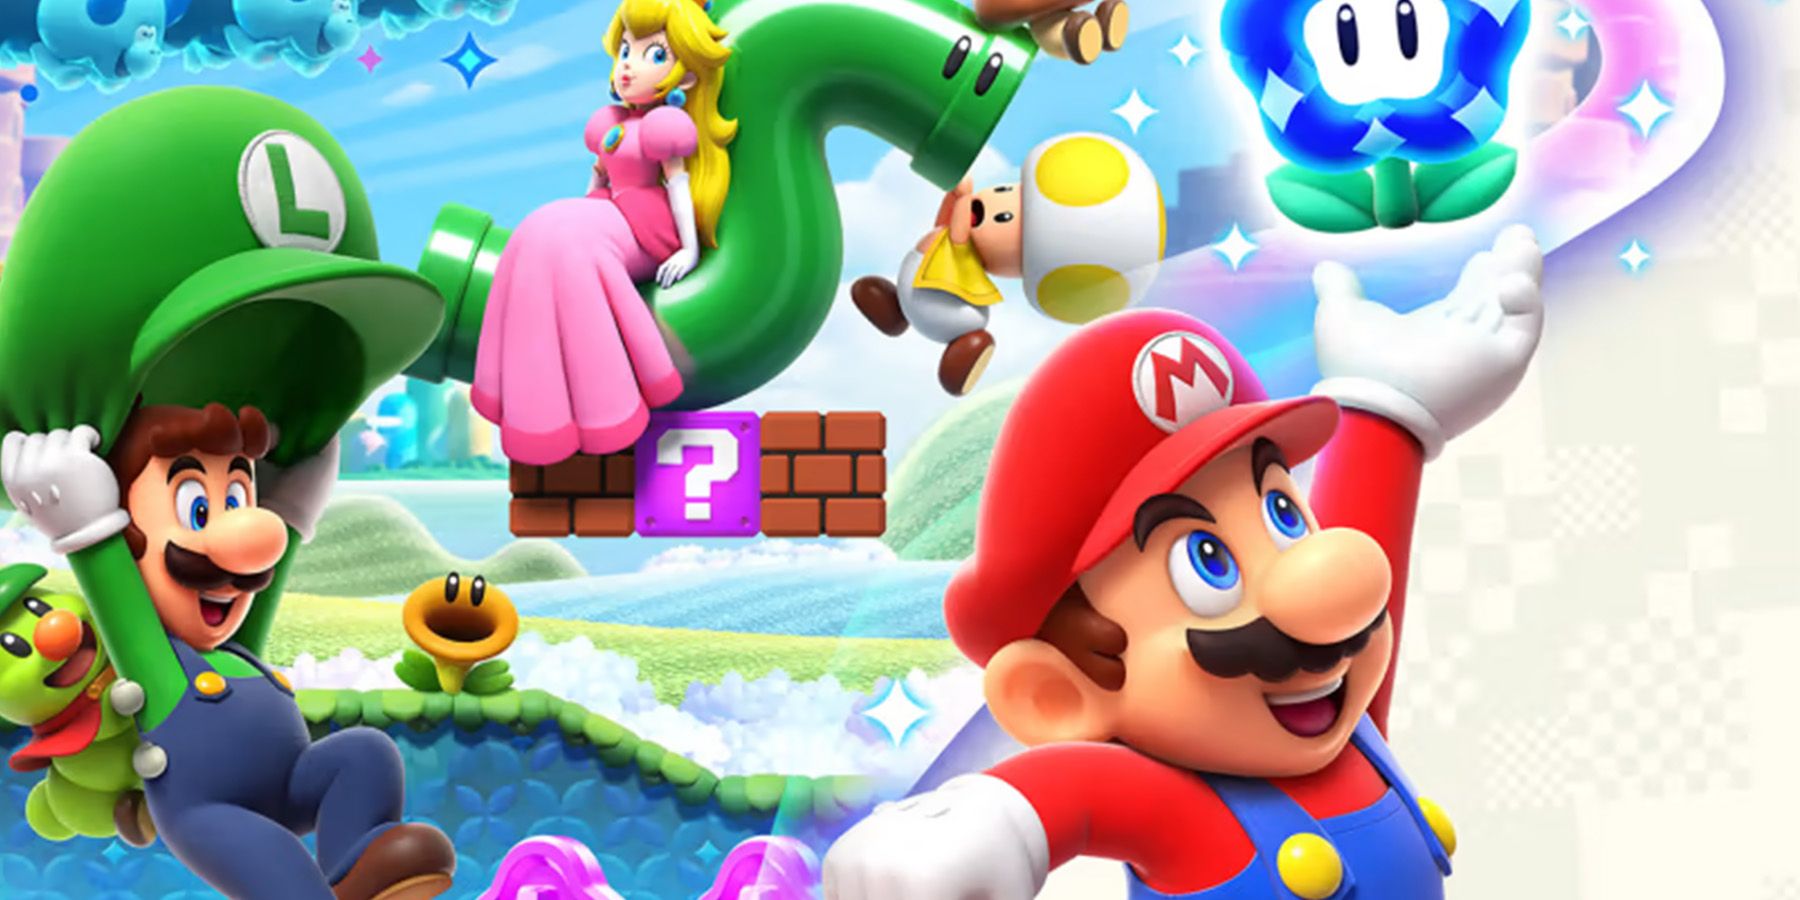 Super Mario Bros. Wonder has already sold 4.3 million copies